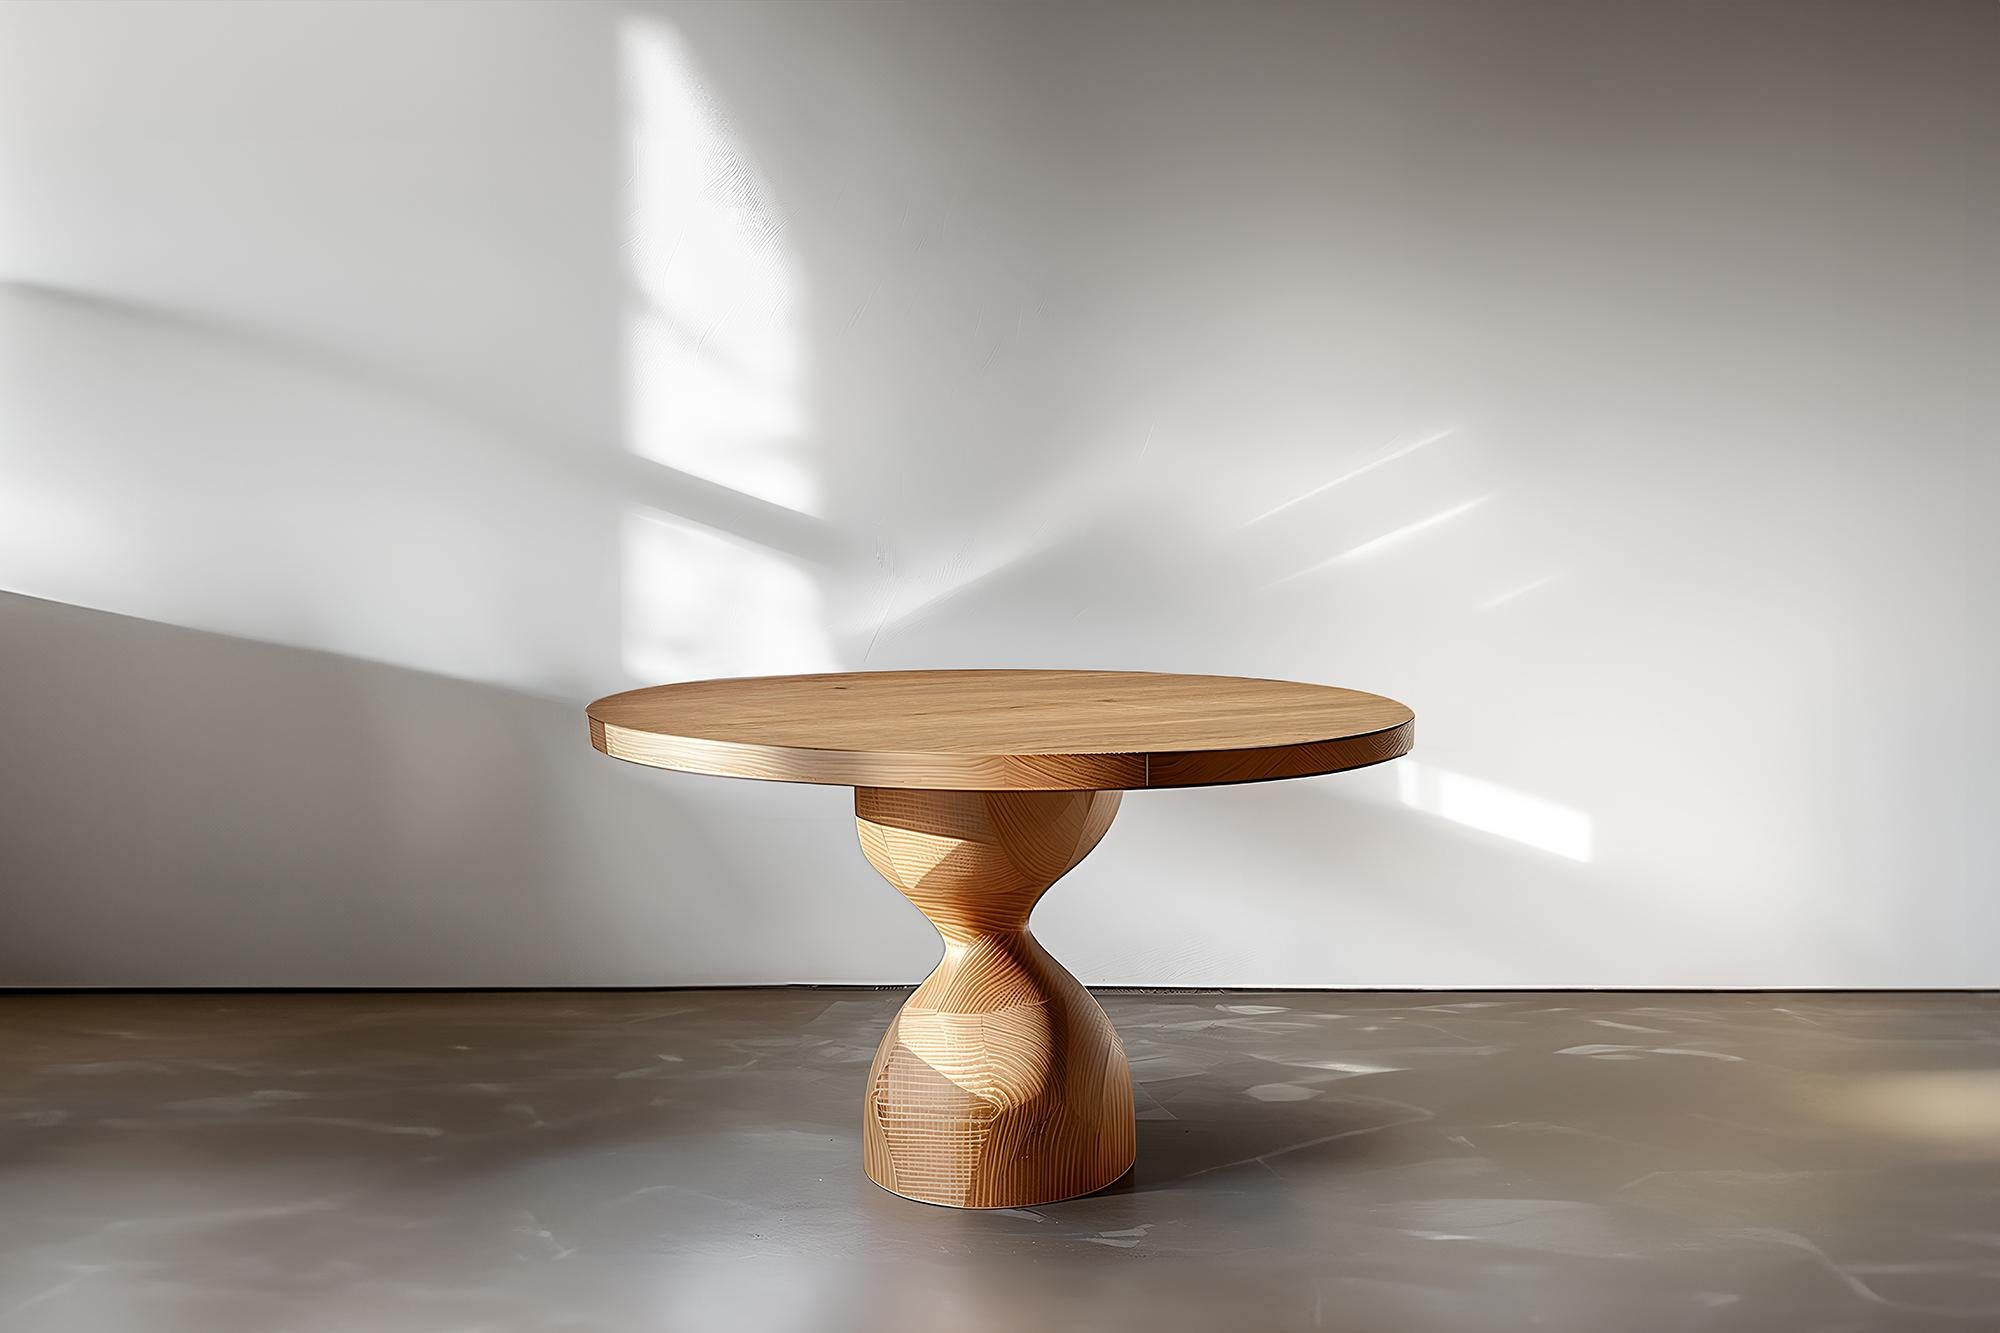 Bureaux sculpturaux No04, Solid Wood Elegance by Socle & Joel Escalona

--

Voici la 